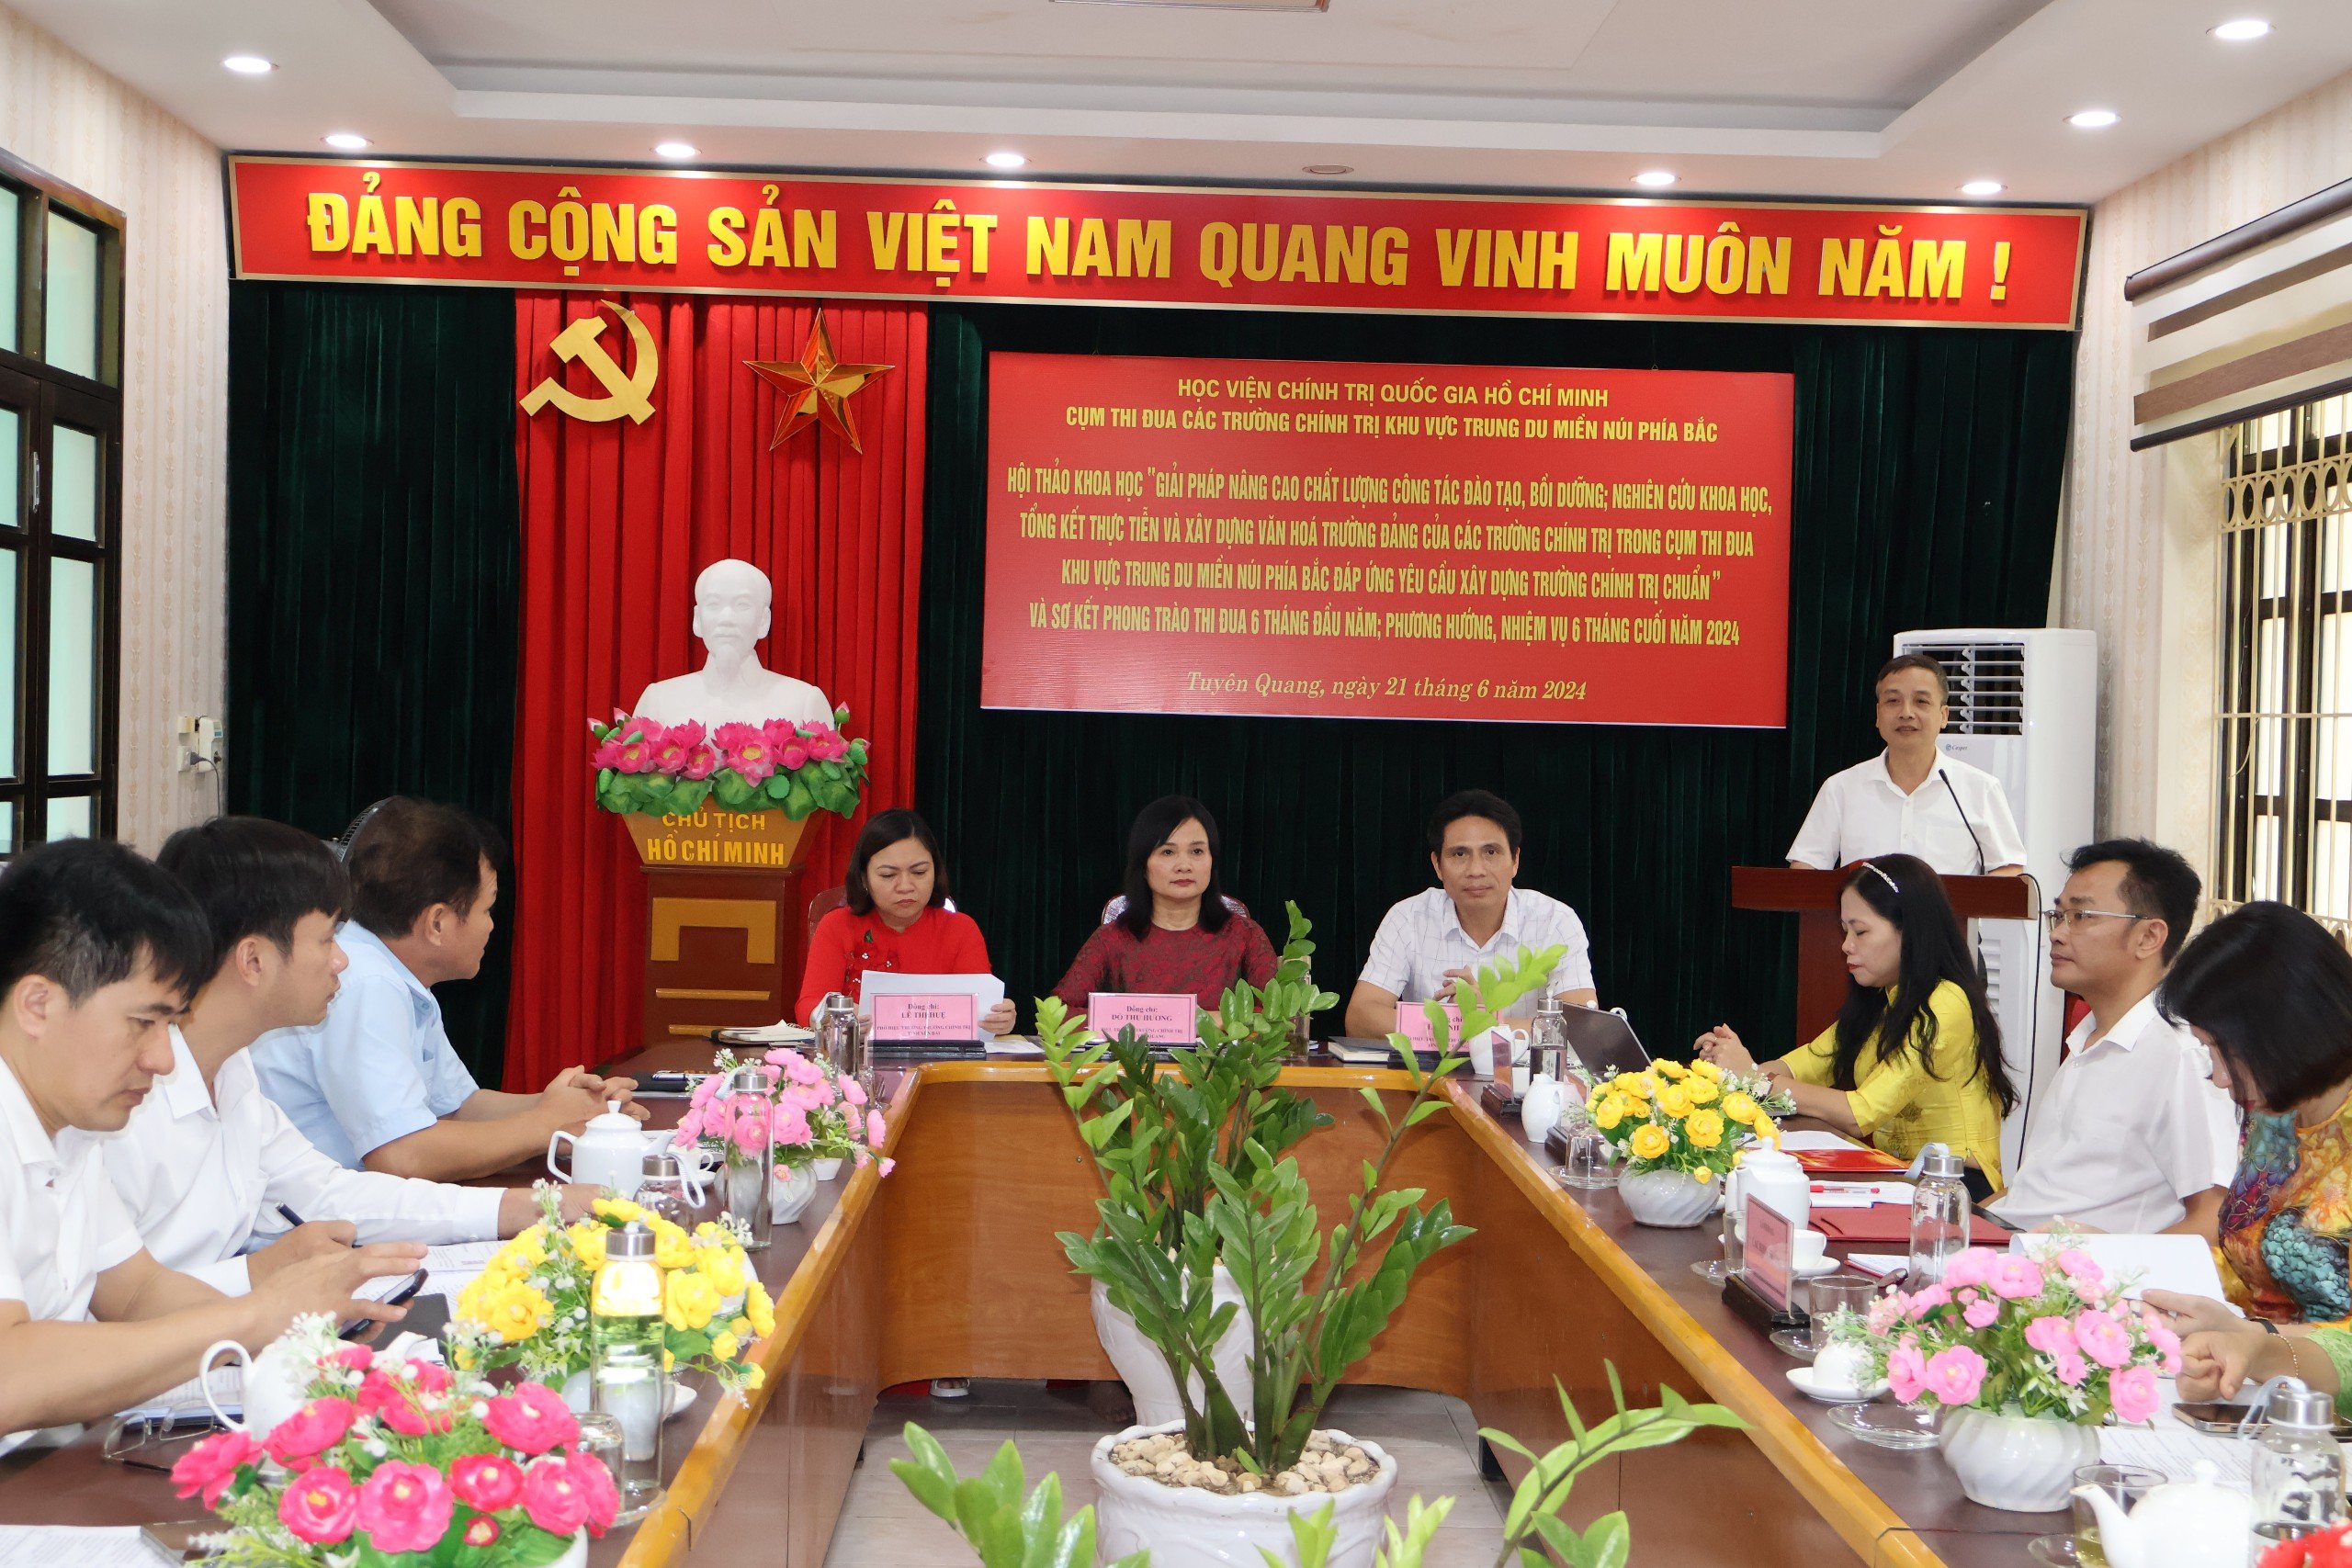 Trường Chính trị tỉnh Phú Thọ dự Hội thảo khoa học và Sơ kết phong trào thi đua 6 tháng đầu năm 2024 Cụm thi đua các trường chính trị khu vực Trung du và miền núi phía Bắc